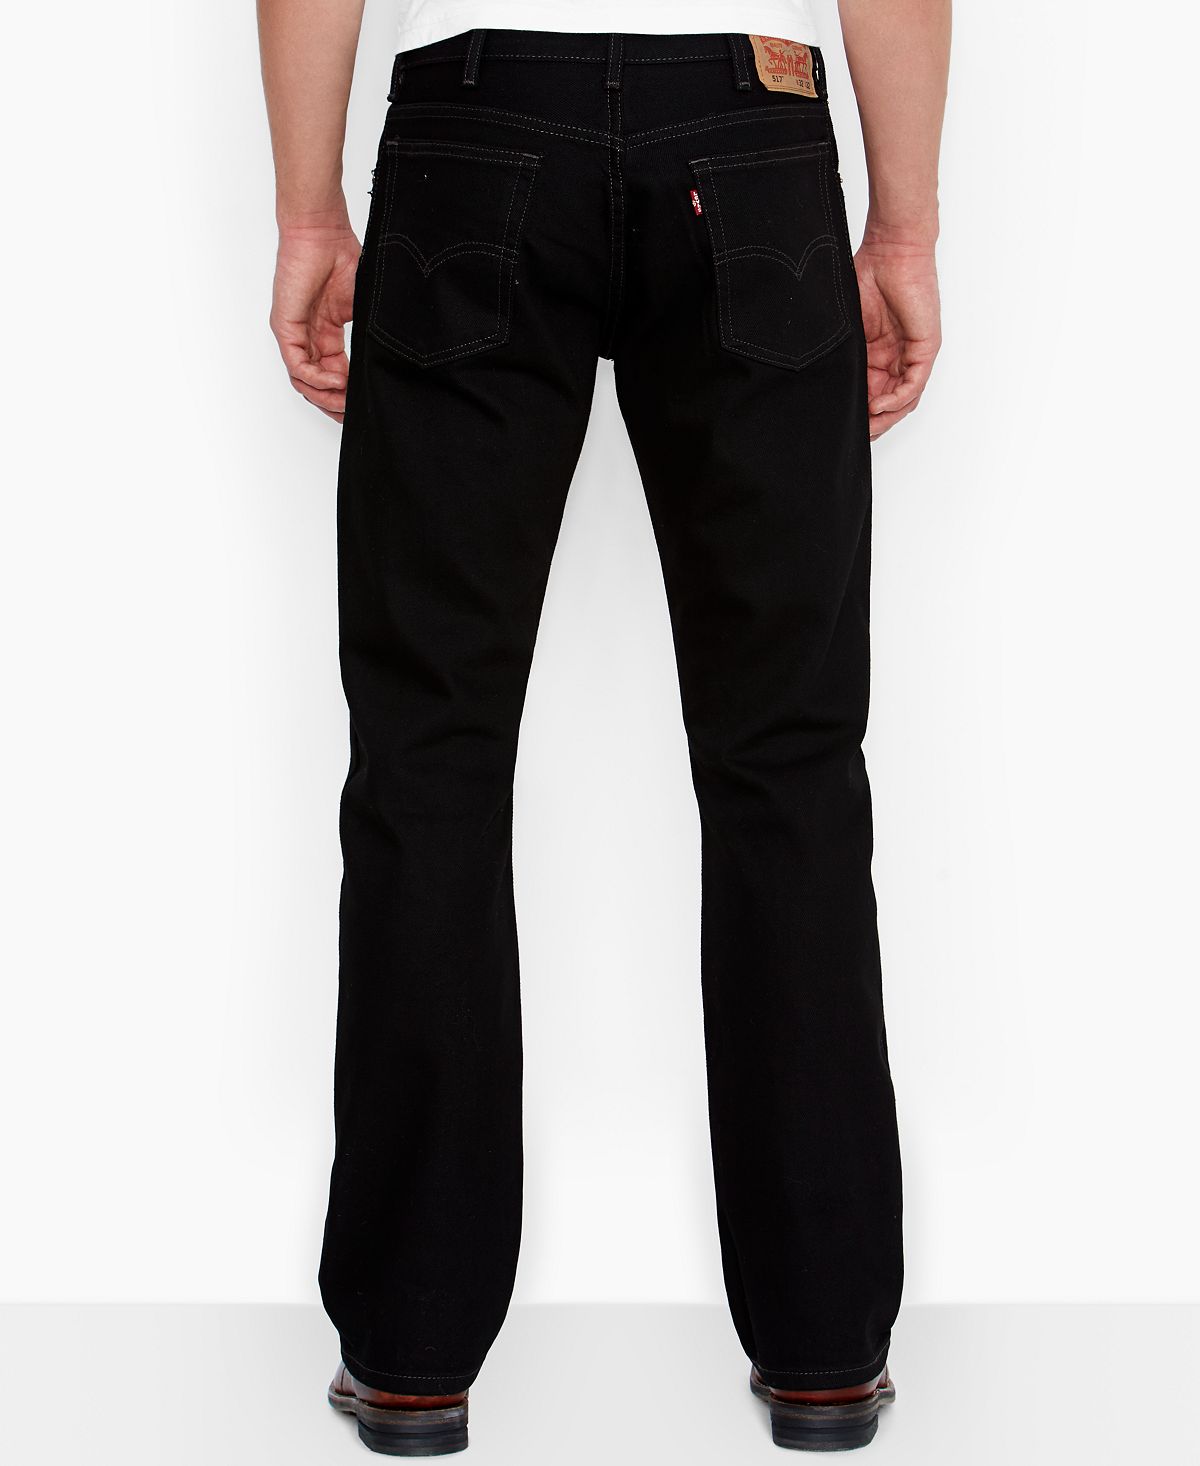 Levi's 517 Bootcut Fit Jeans Black